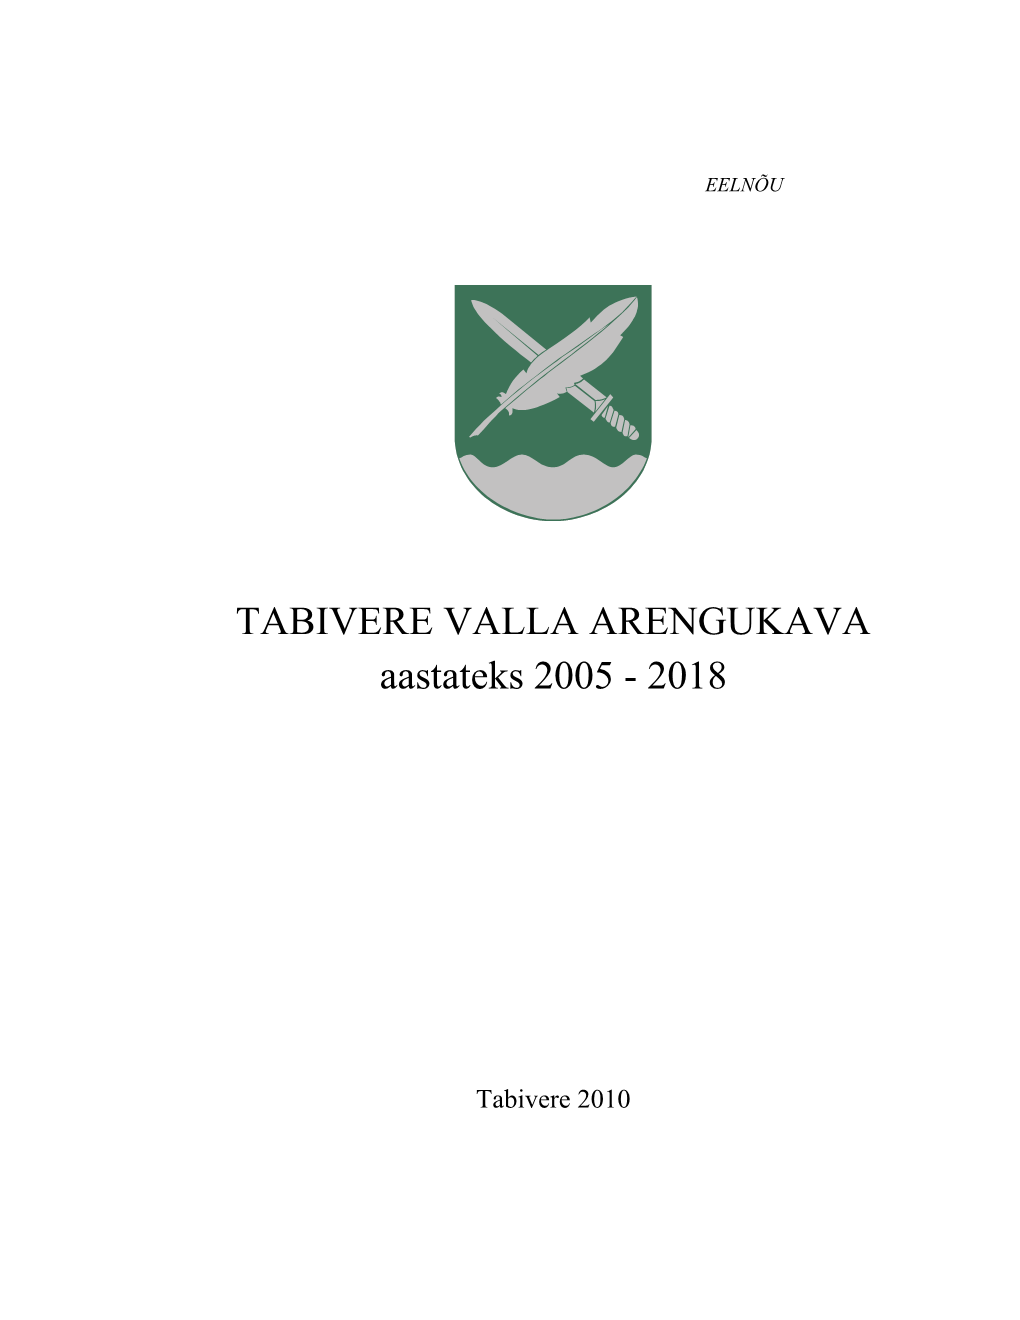 TABIVERE VALLA ARENGUKAVA Aastateks 2005 - 2018